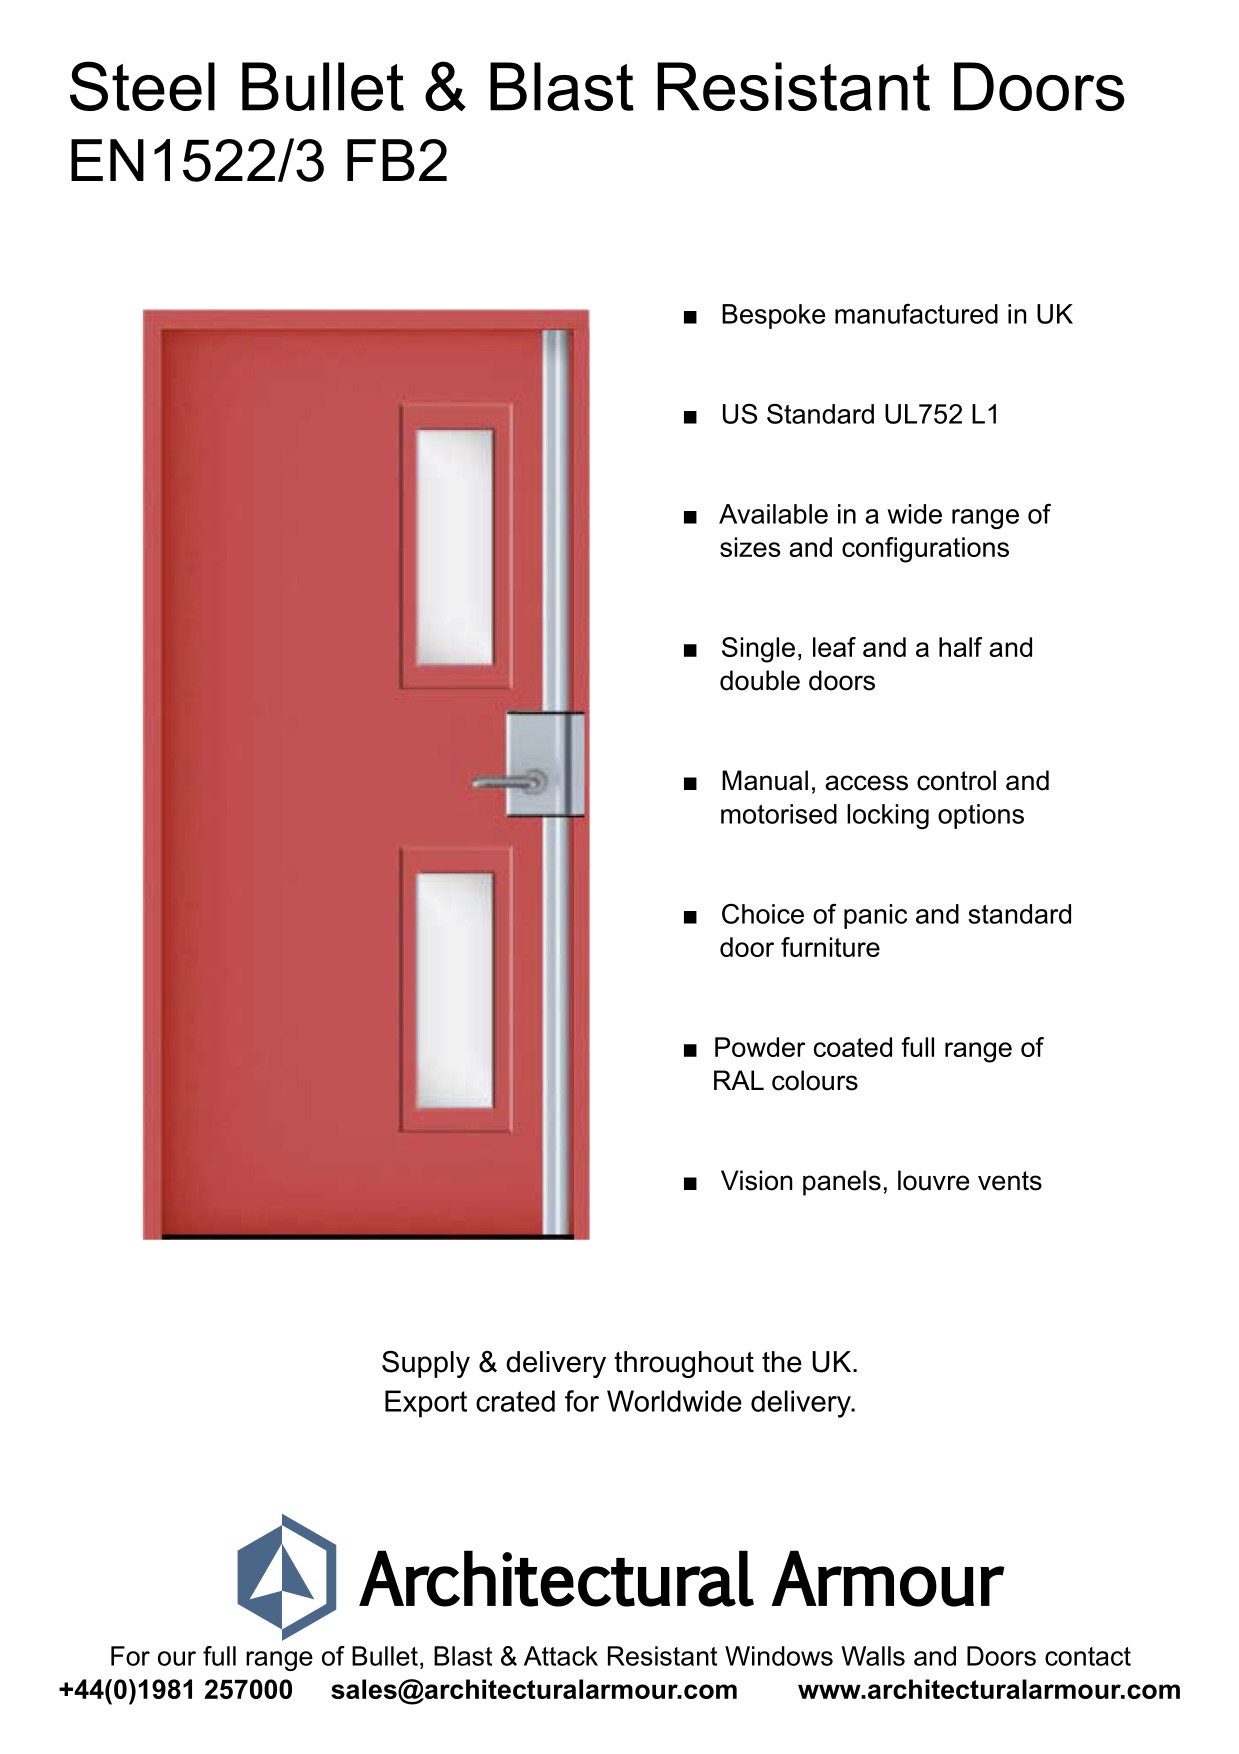 Blast-and-bulletproof-Steel-Door-Vision Panels-EN1522-3-FB2 